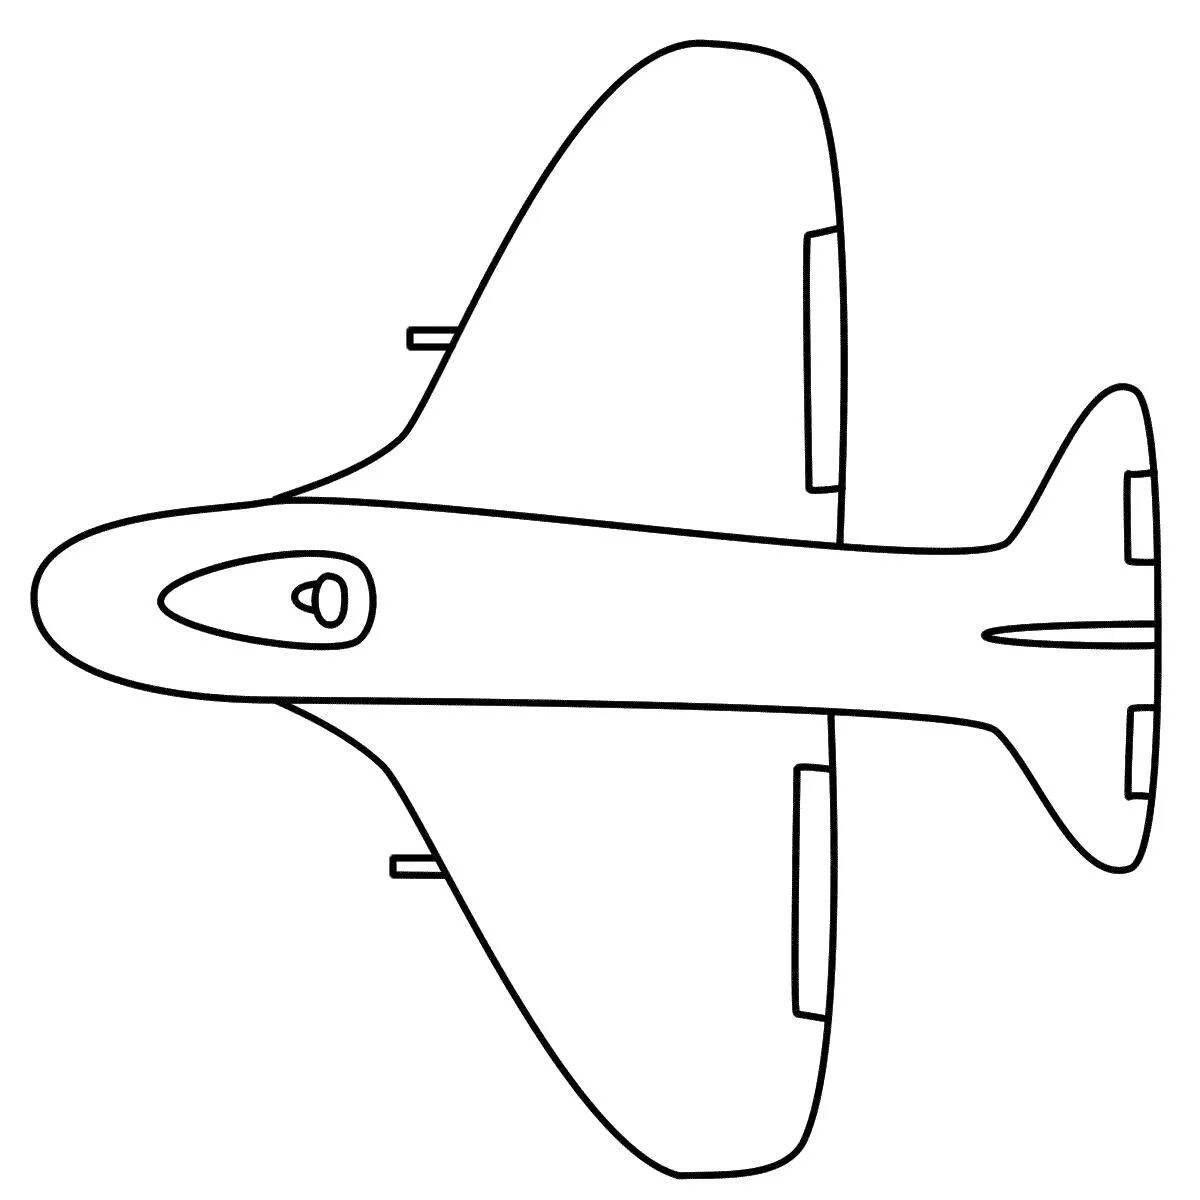 Игривая страница раскраски с рисунком самолета